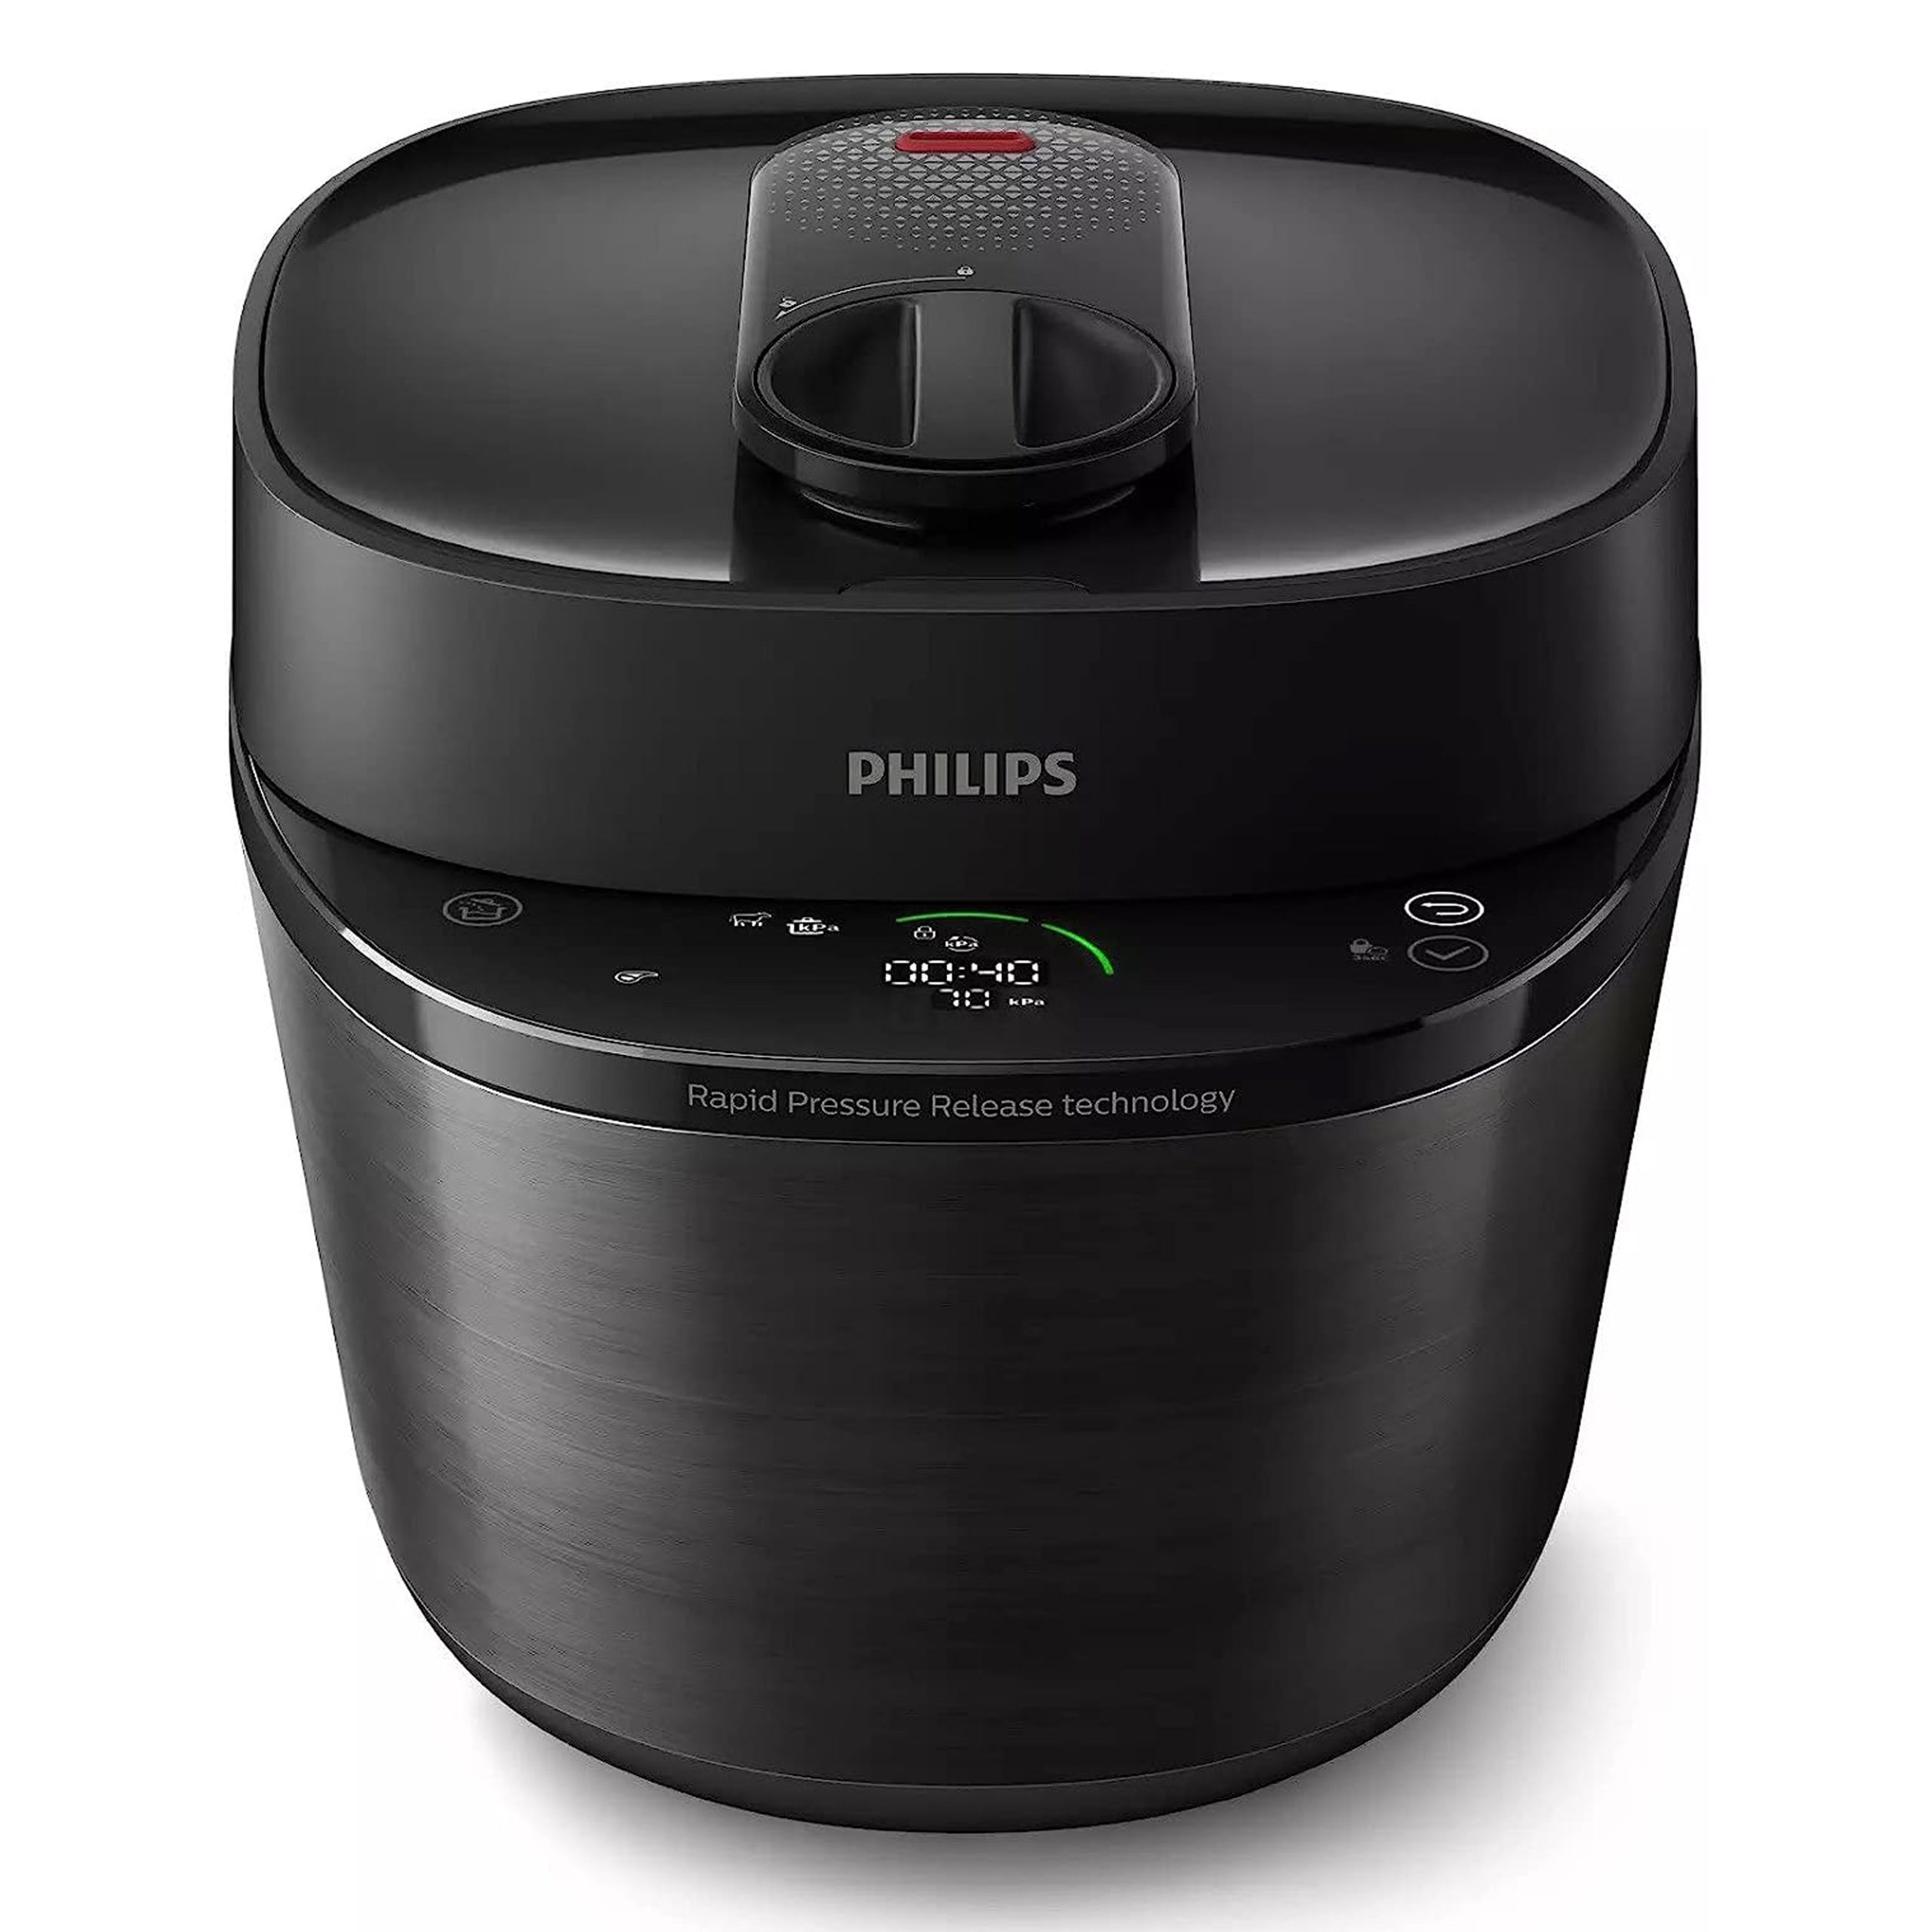 مولتی کوکر فیلیپس Philips All-in-One Cooker All-in-One Cooker Pressurized